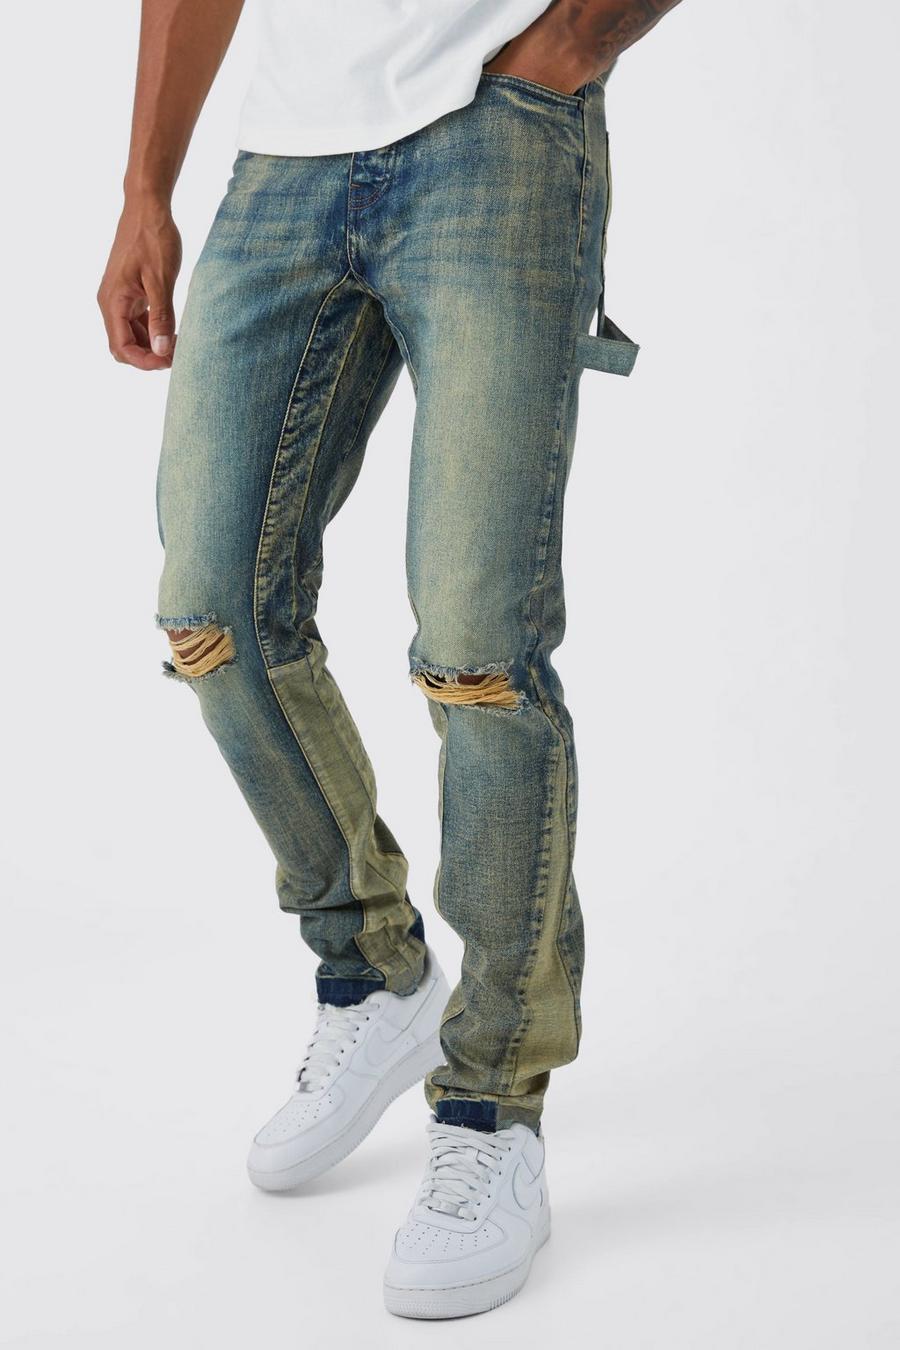 Jeans dritti Tall stile Carpenter in denim rigido, Antique wash azzurro